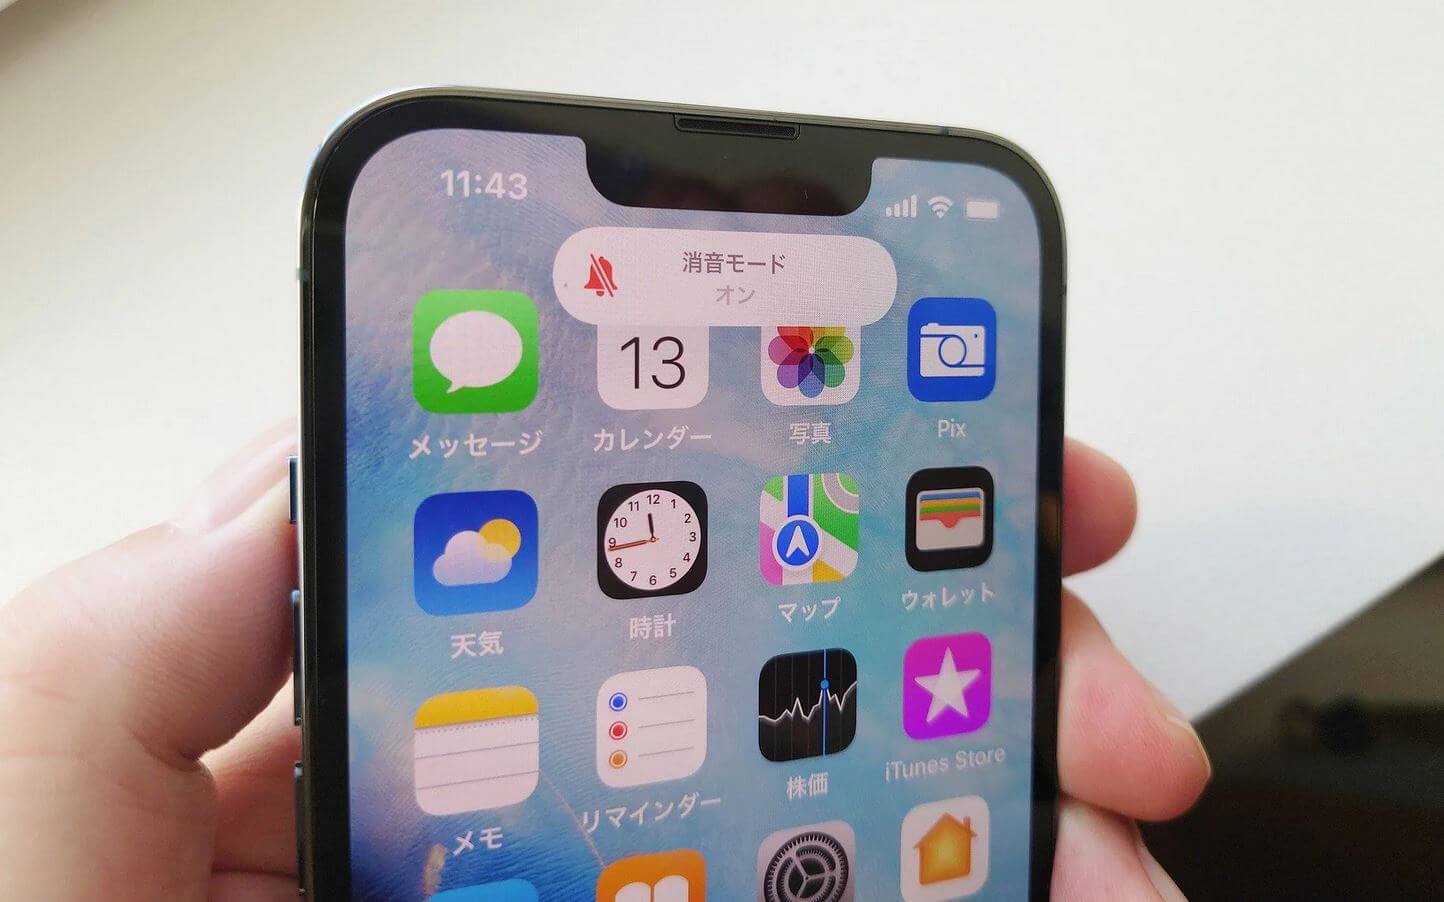 Айфон для какой страны лучше. iPhone для Японии имеет лишь системные ограничения, но других отличий в нем нет. Фото.